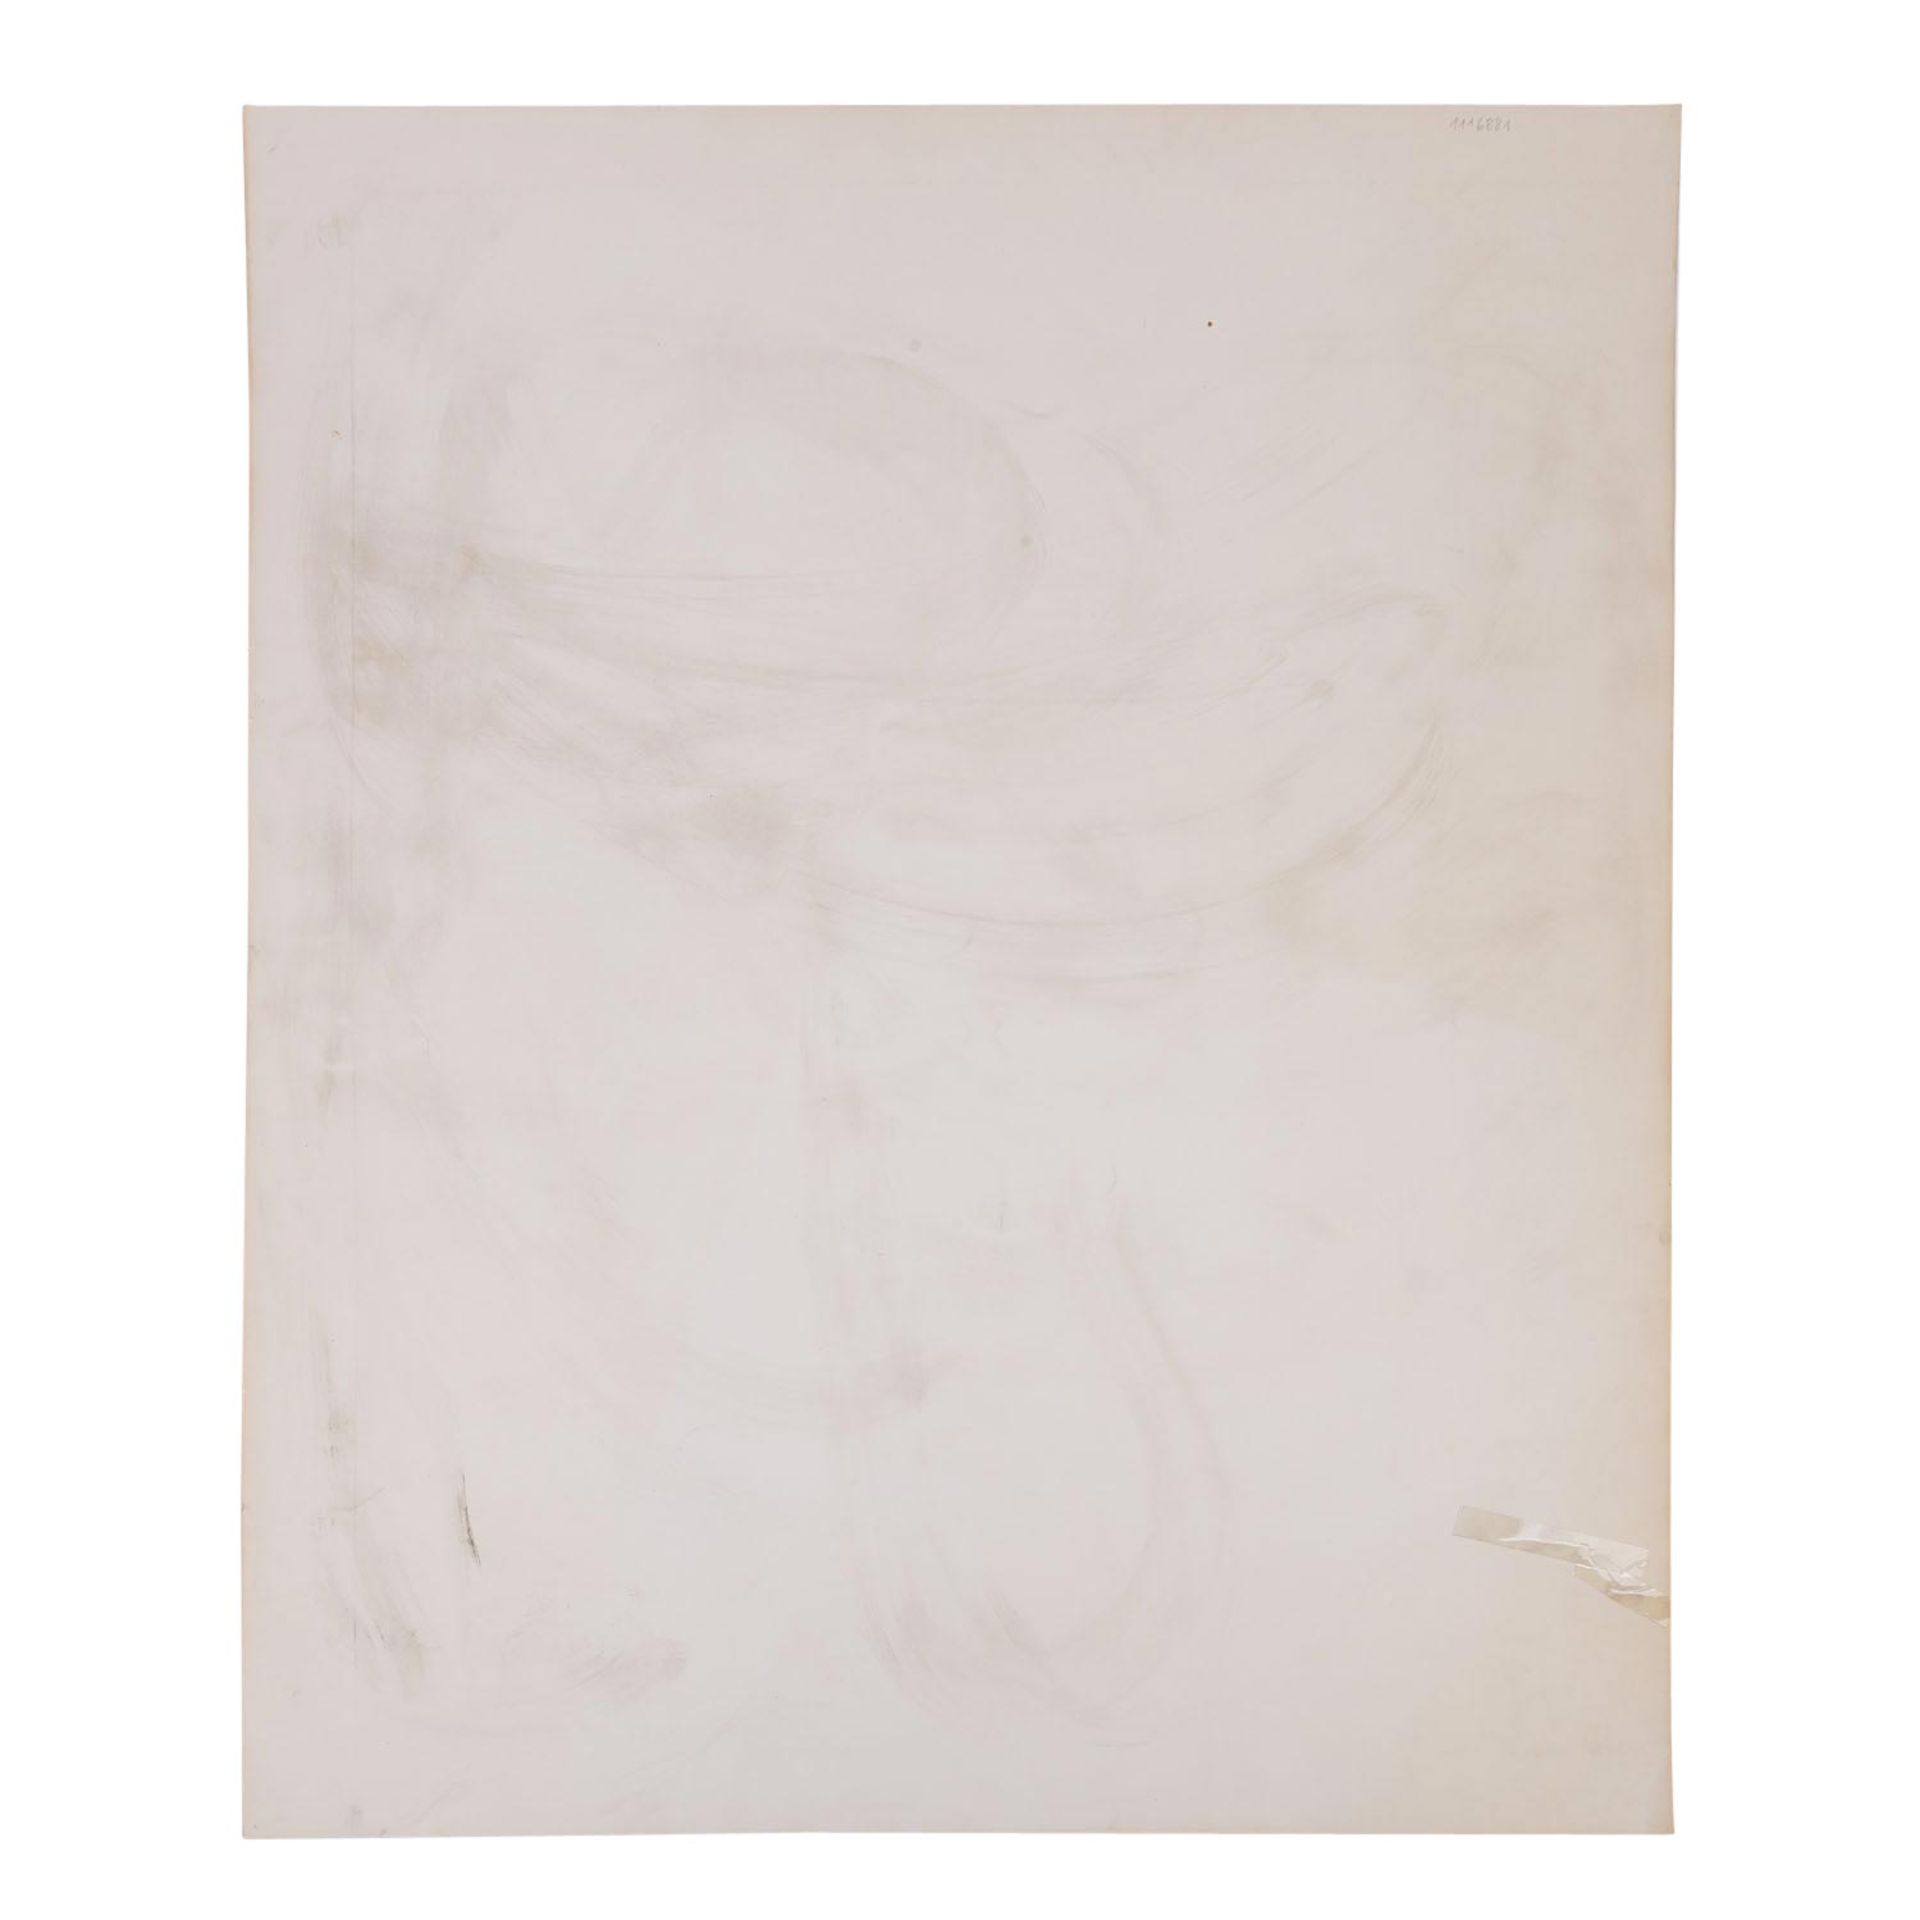 HRDLICKA, ALFRED (1928-2009), "Figürliche Komposition", 1972, - Bild 6 aus 6